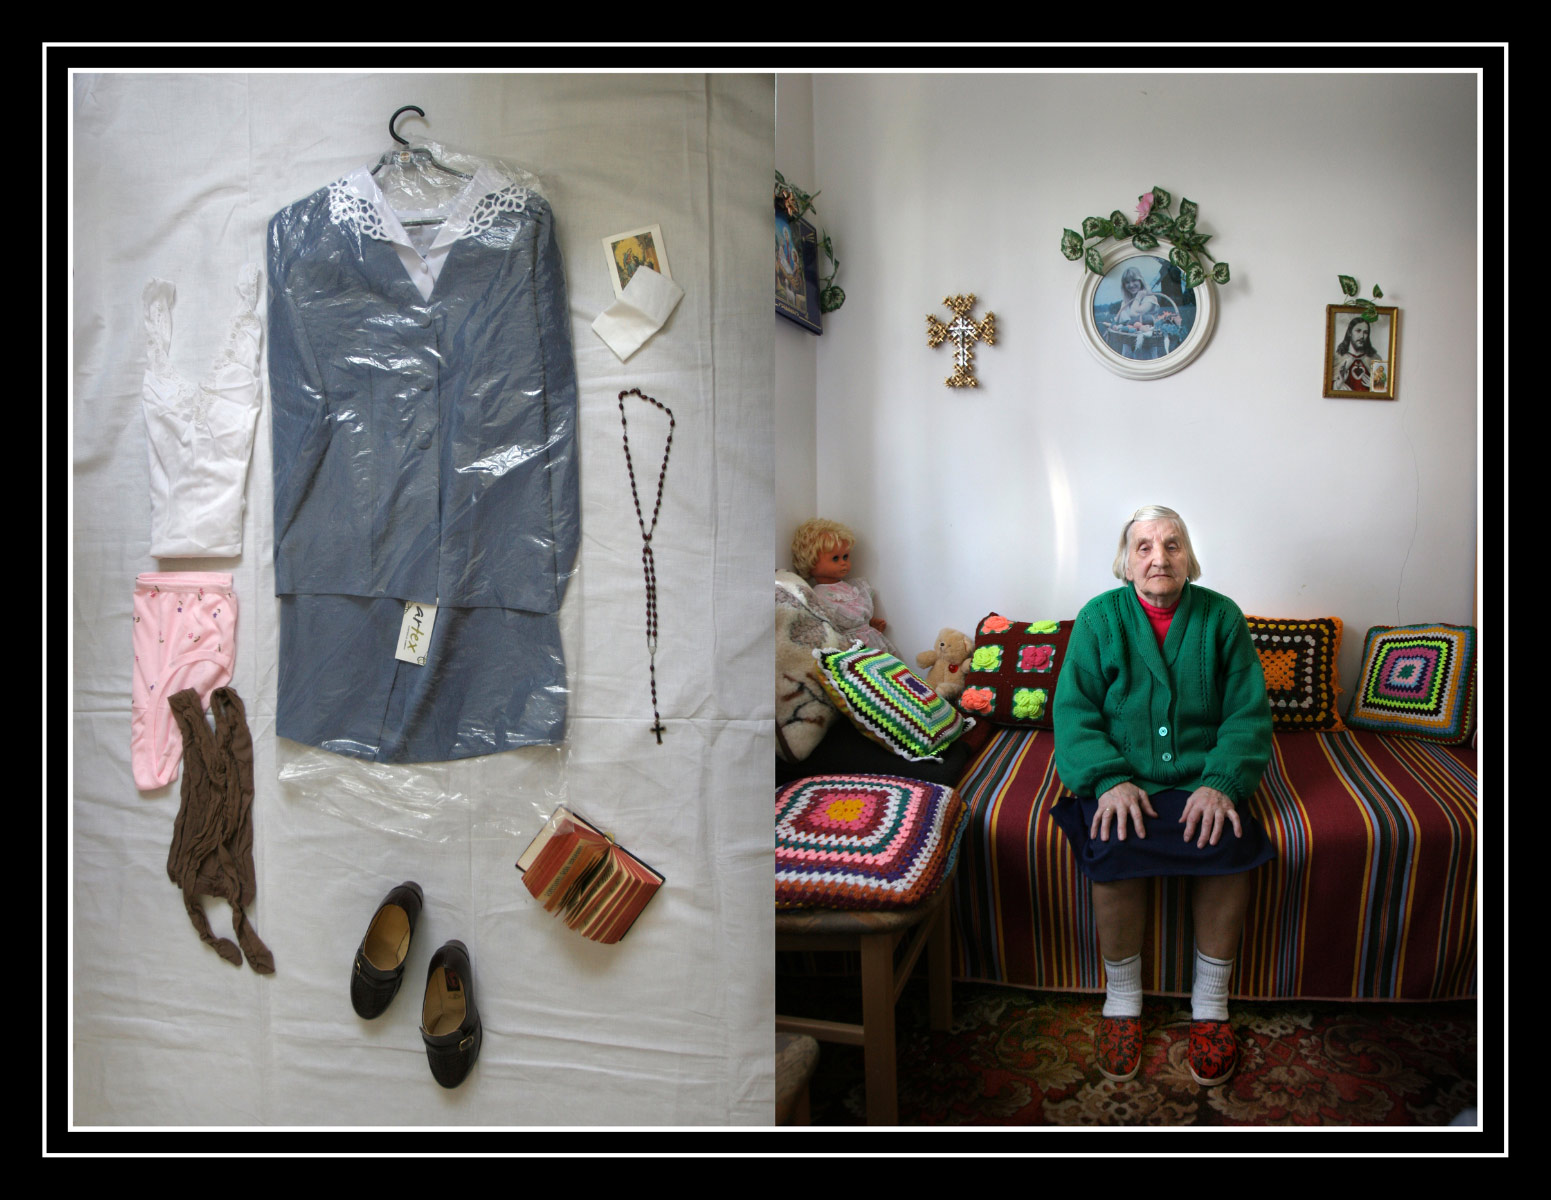 Clothes for death - Documentary photographer Anna Bedyńska